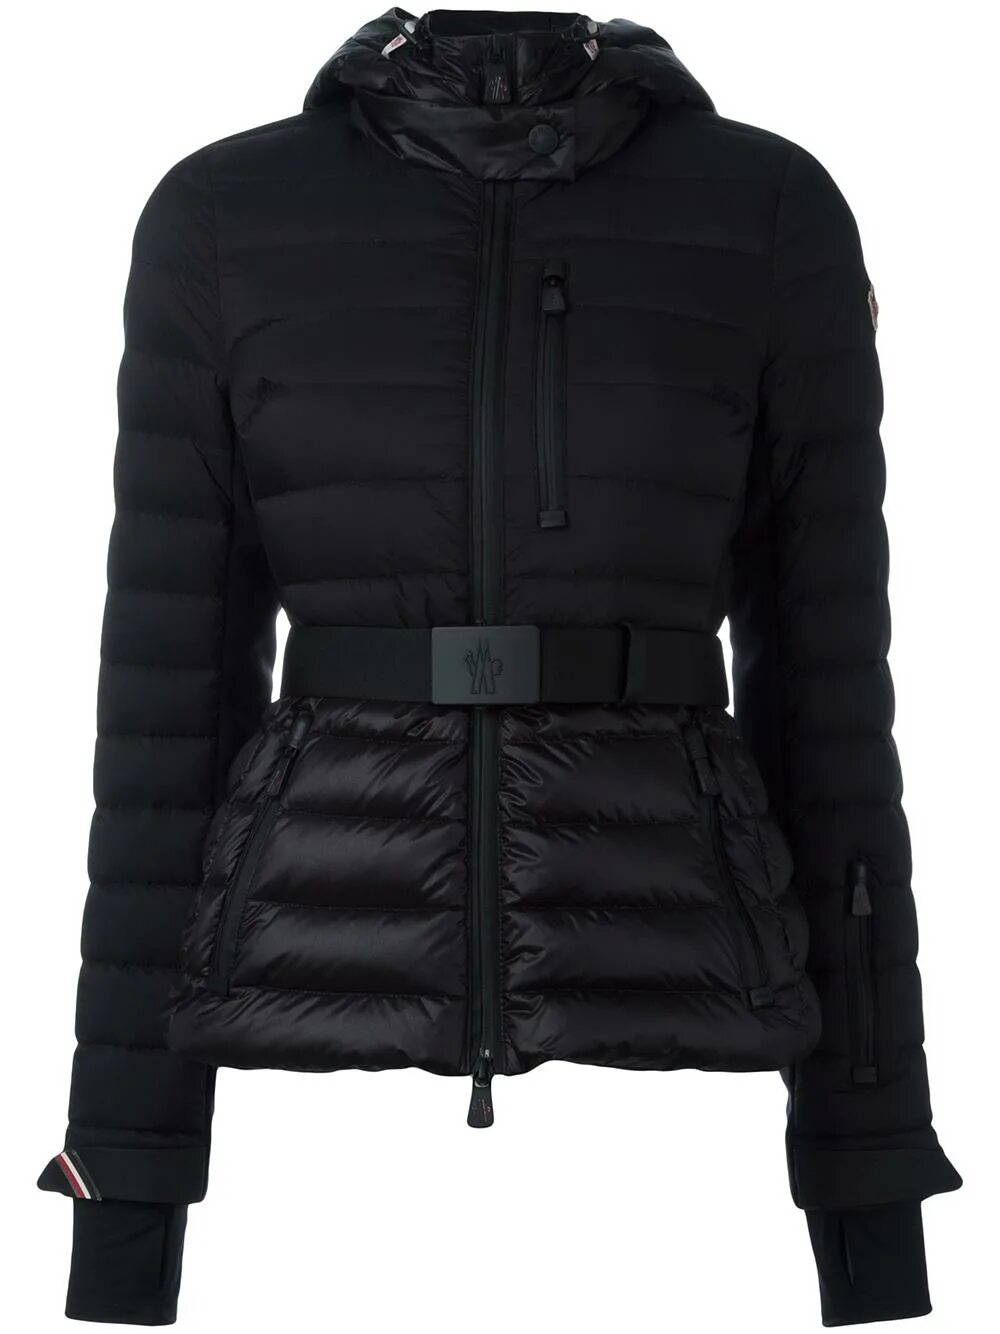 Черная куртка с поясом. Moncler Grenoble пуховик женский. Куртка монклер черная. Moncler Grenoble 2022. Пуховик монклер женский черный с поясом.